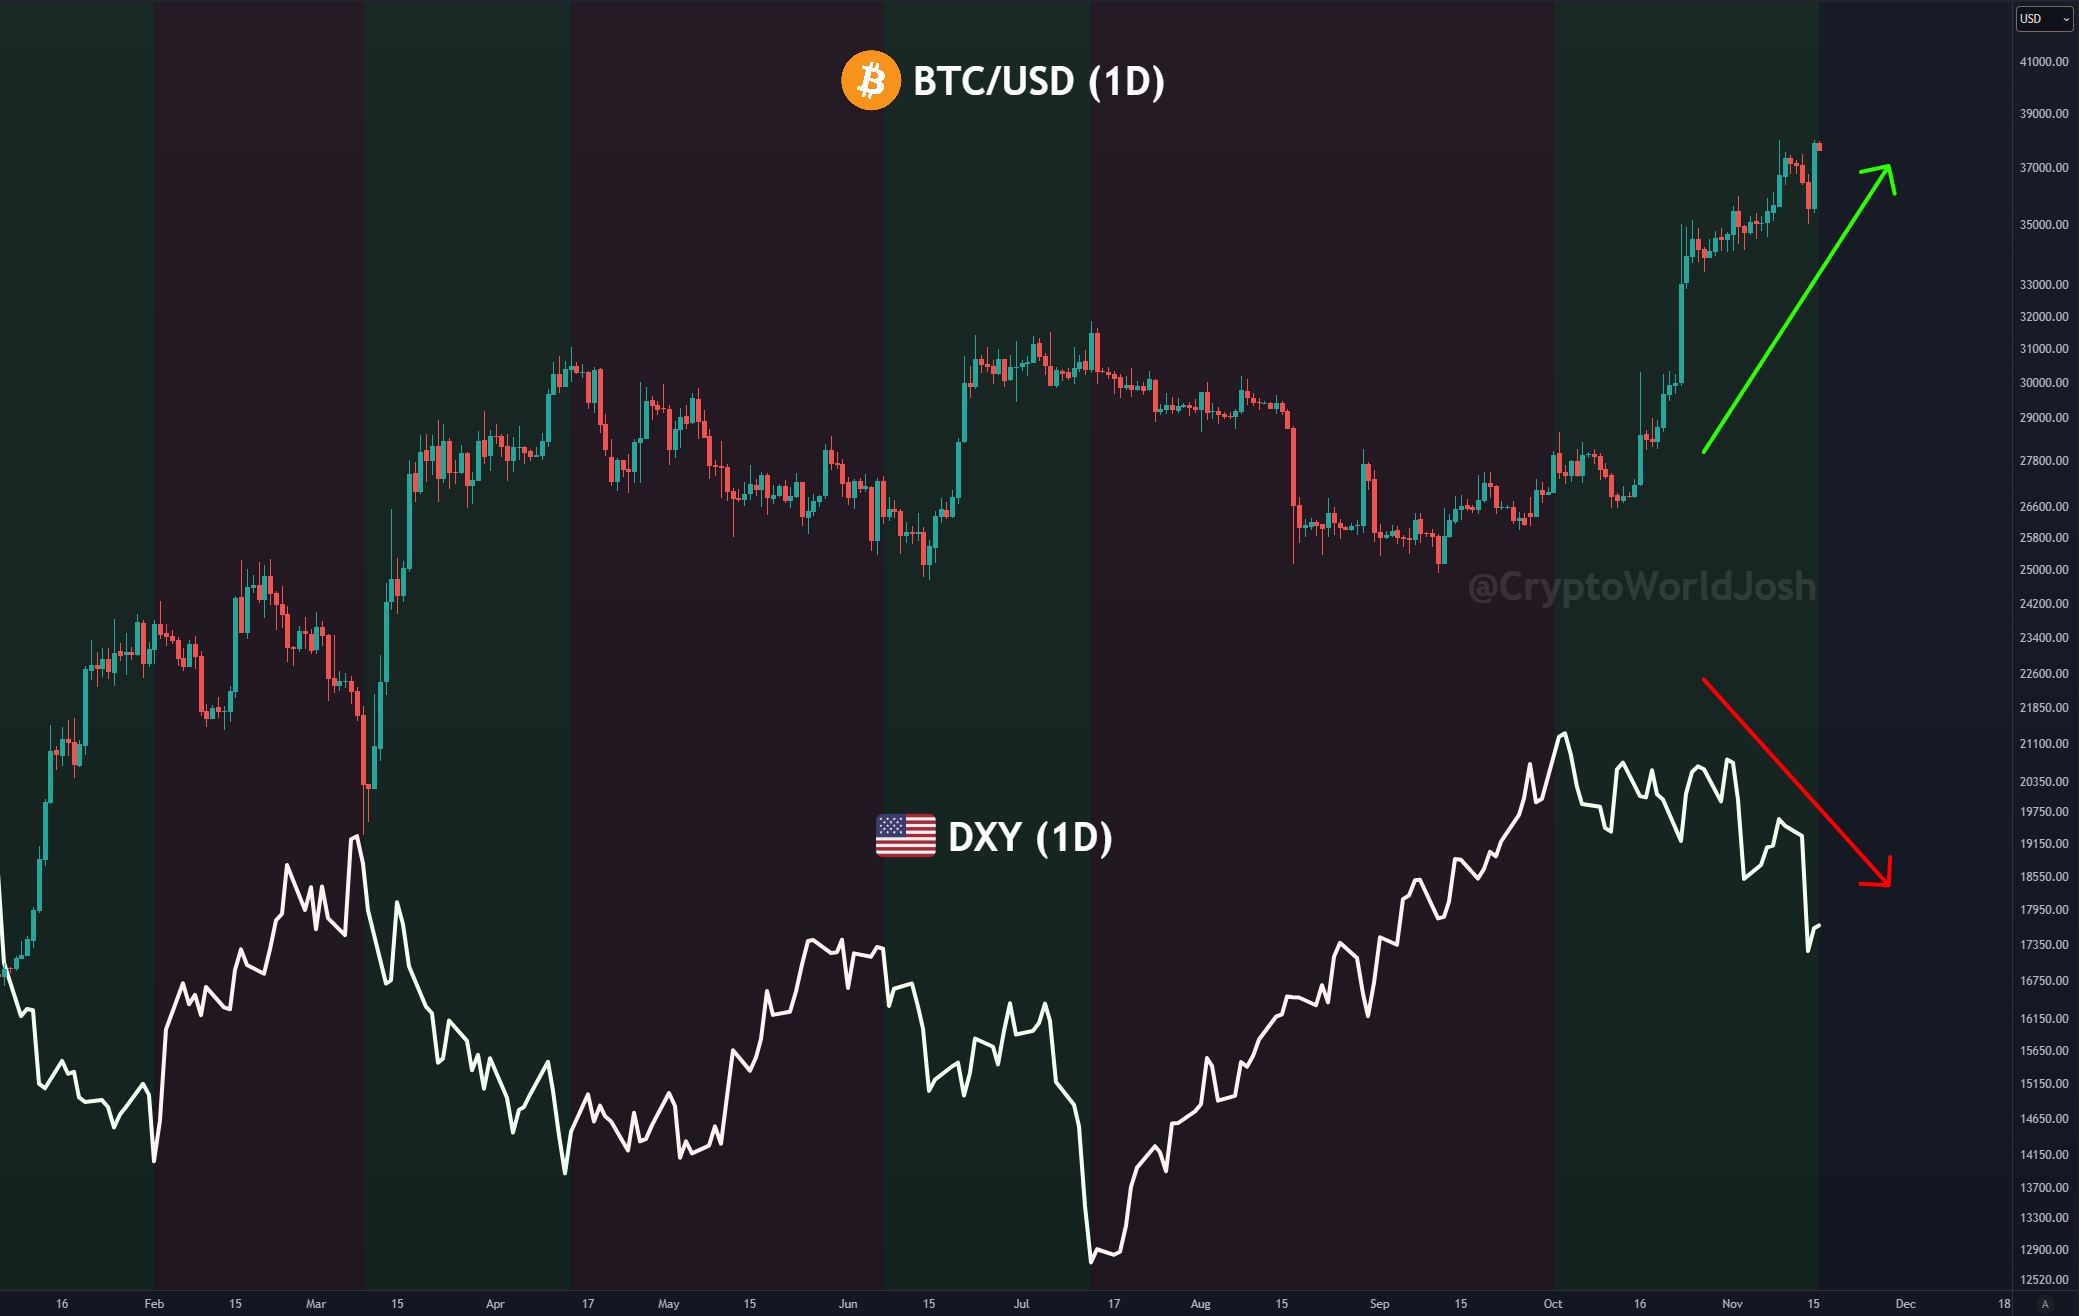 Bitcoin vs DXY